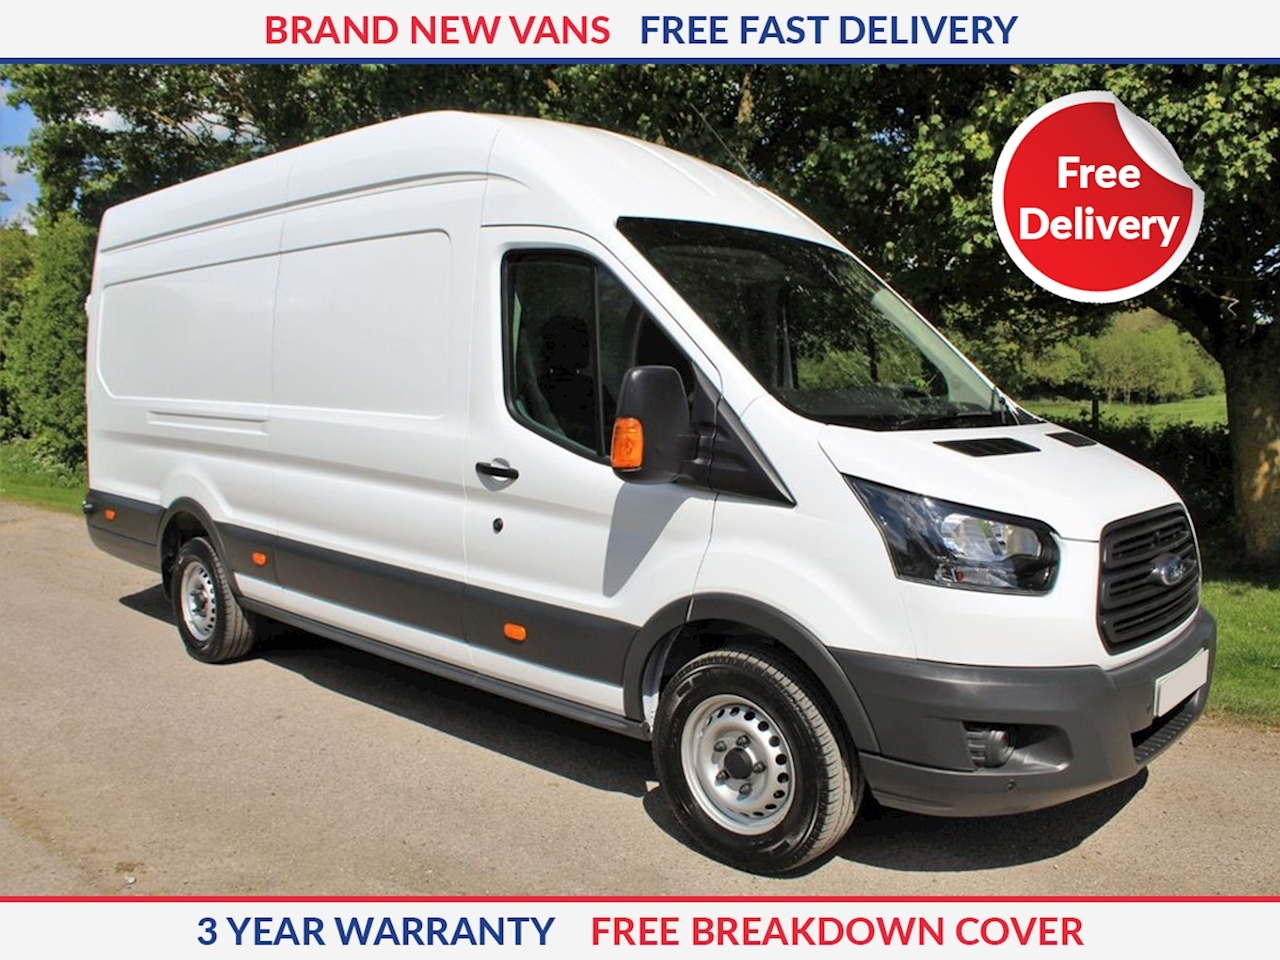 best deals on vans uk 